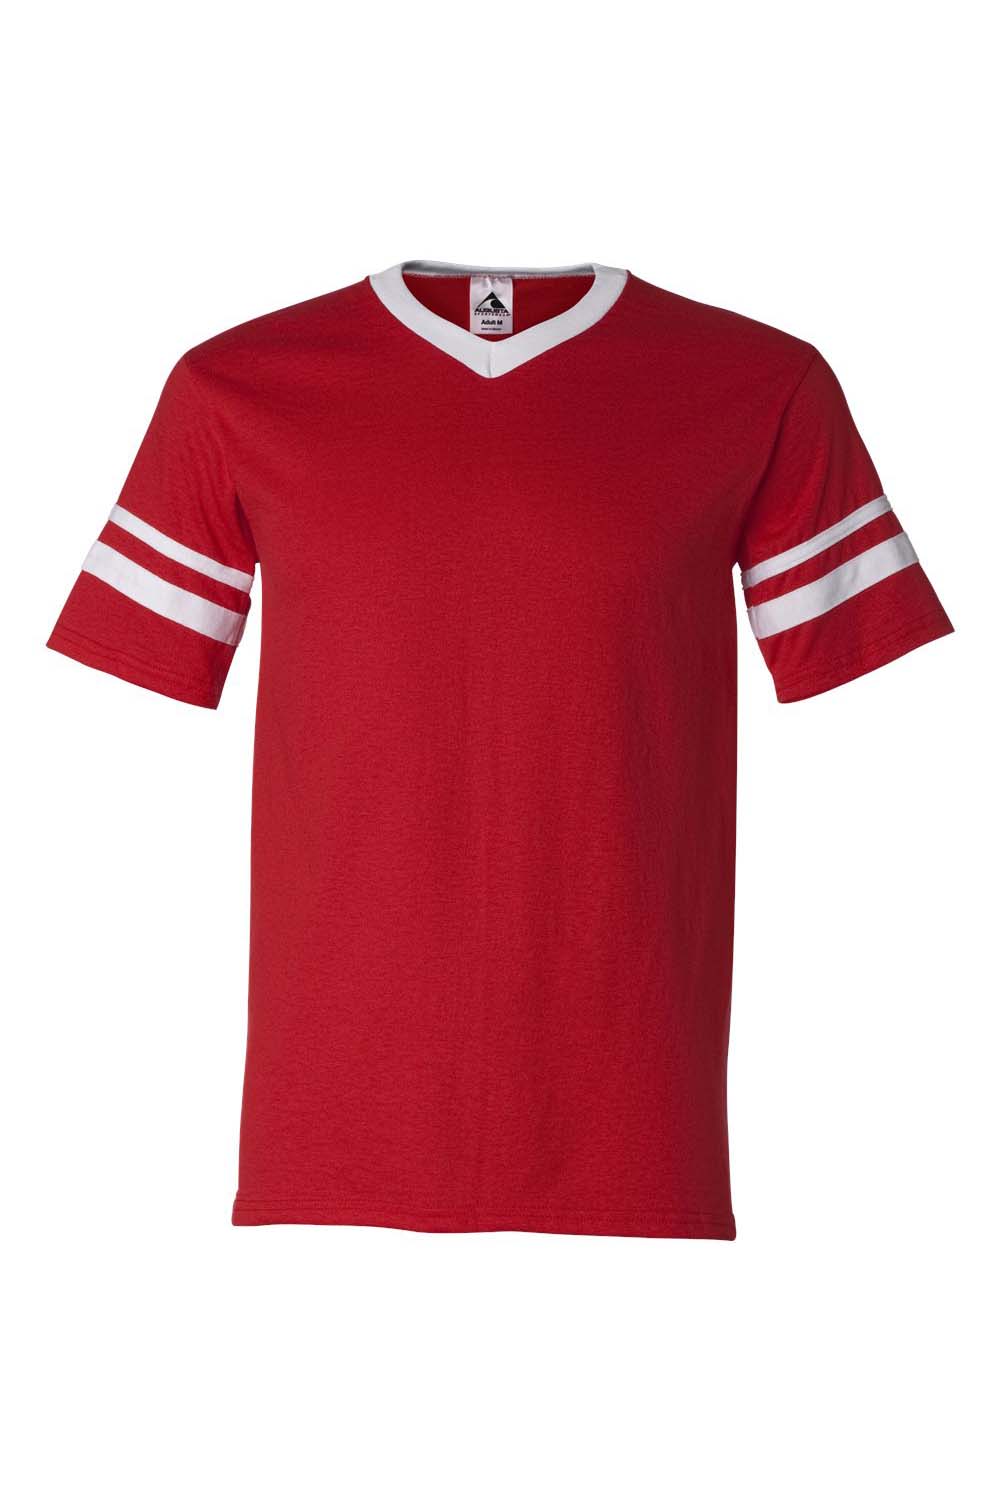 Augusta Sportswear 360 Mens Short Sleeve V-Neck T-Shirt Red/White Model Flat Front